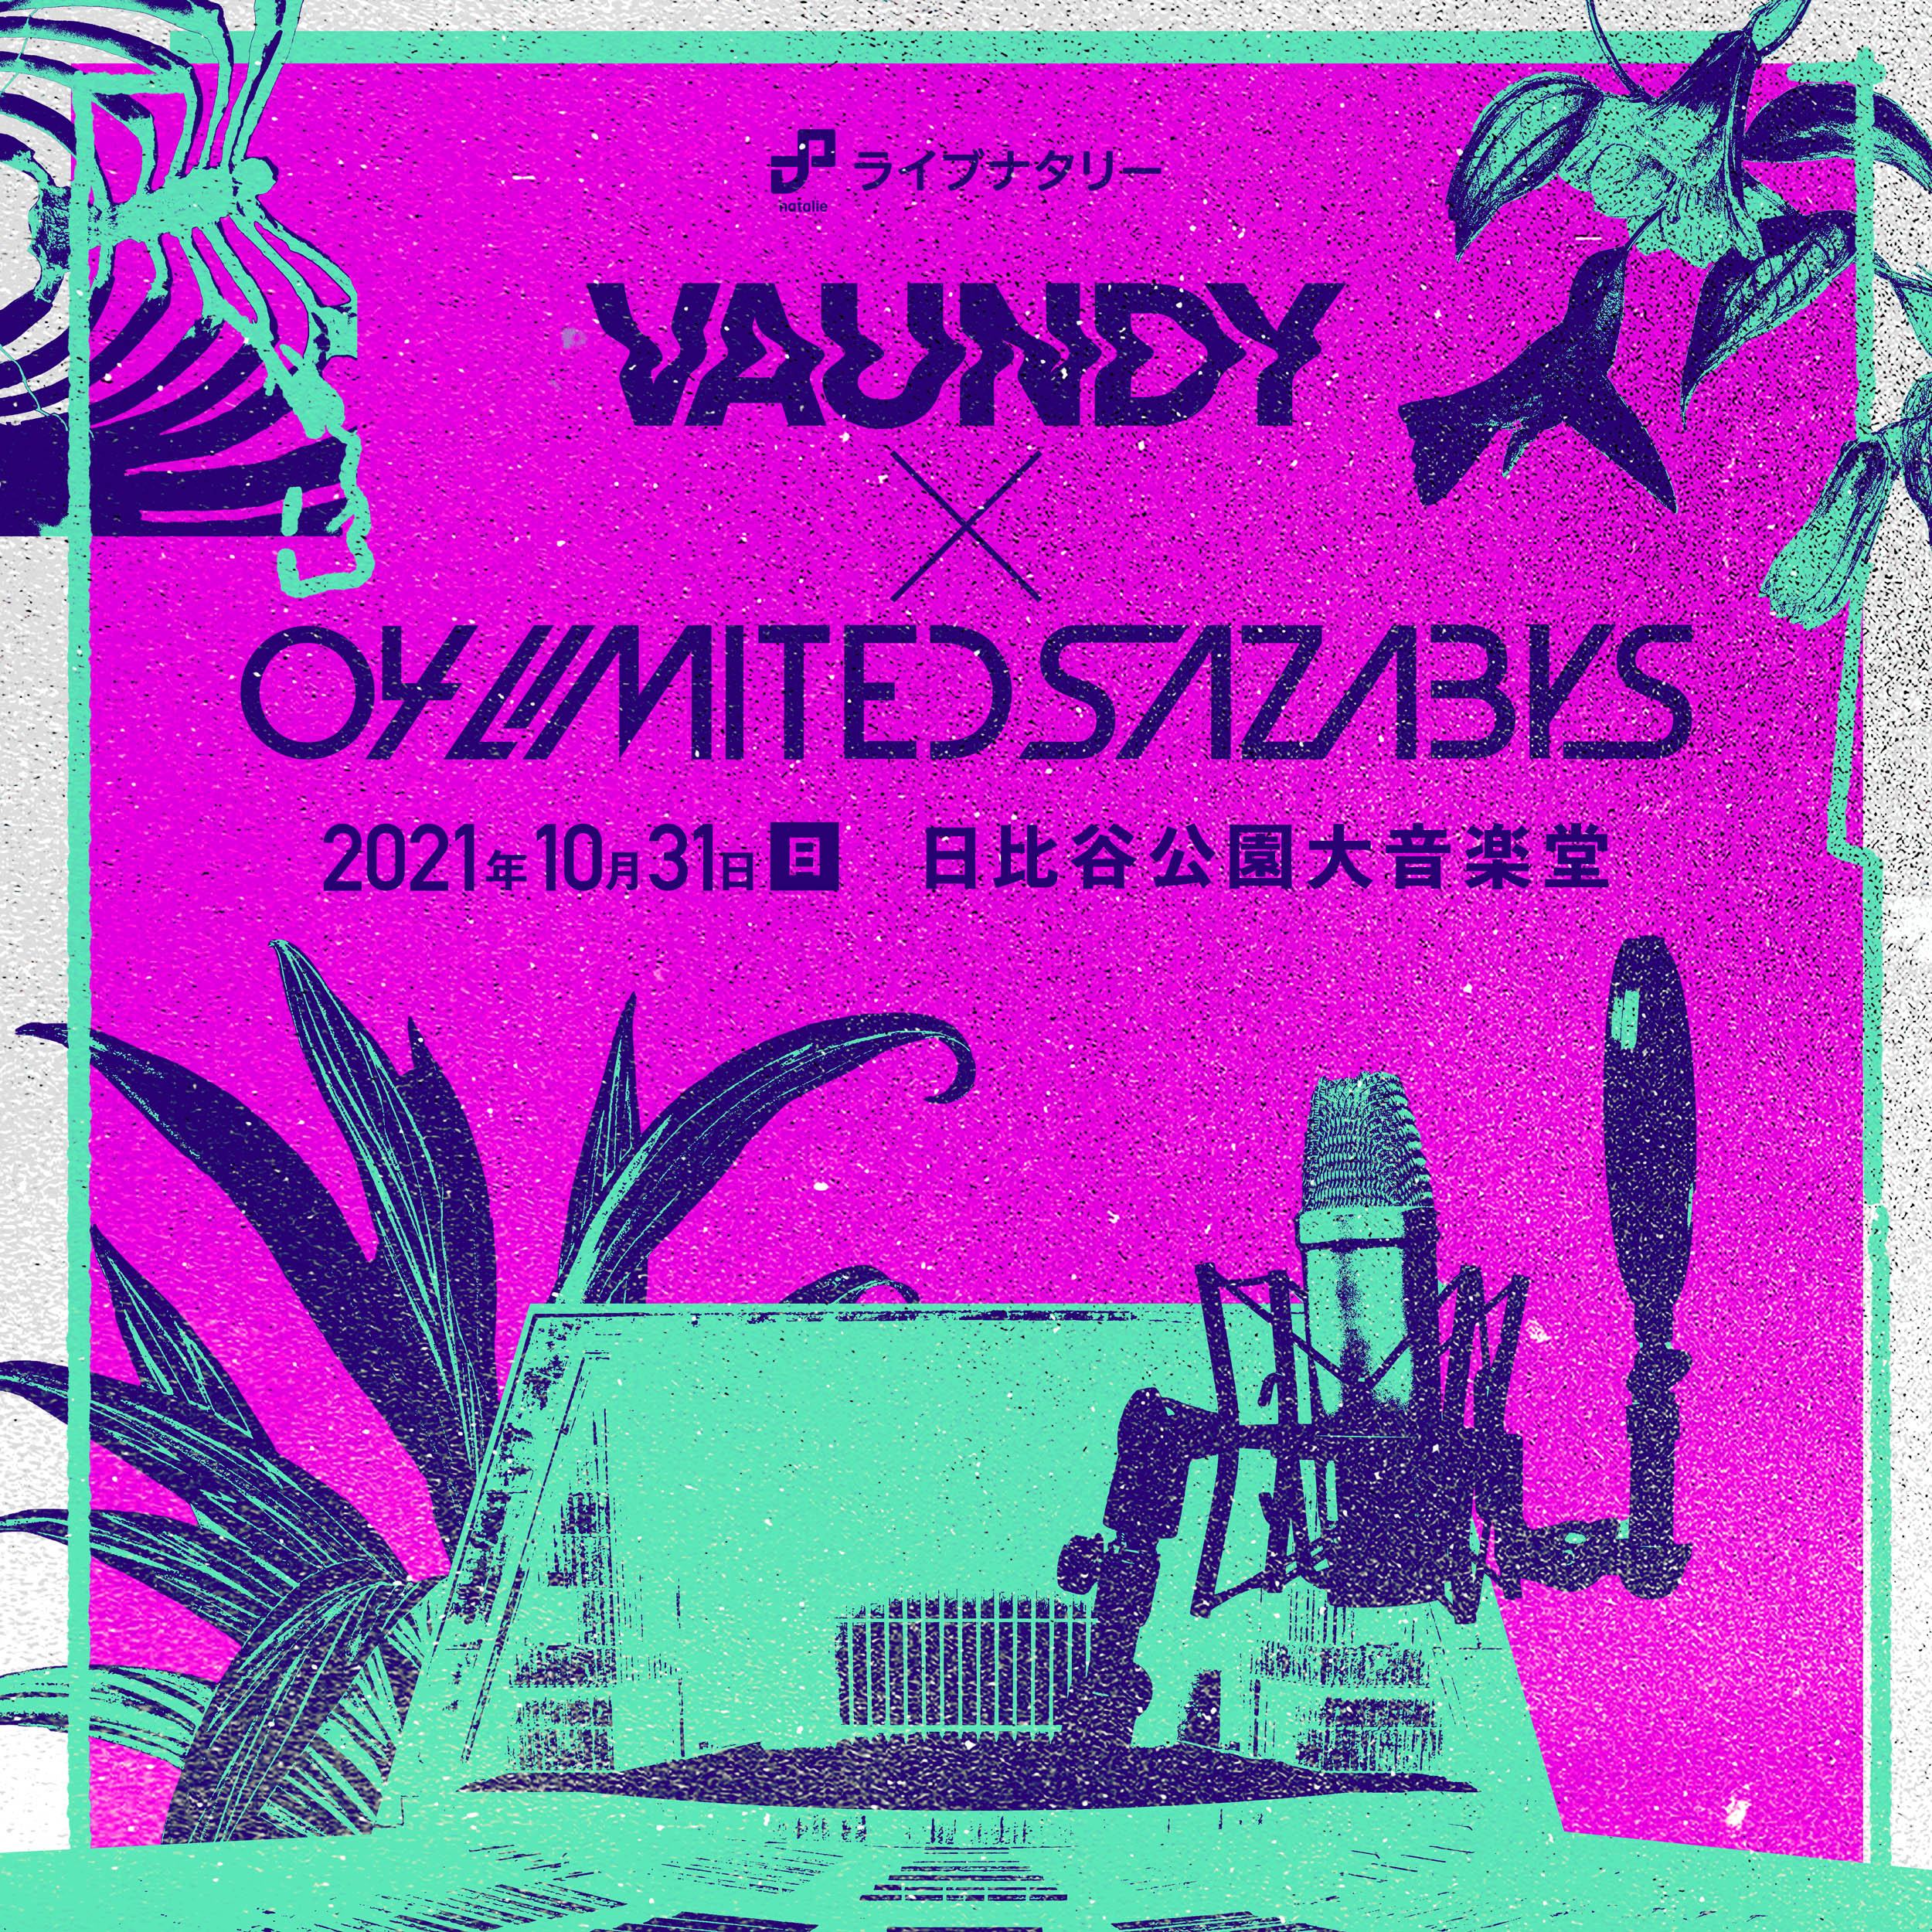 【東京】ライブナタリー “Vaundy × 04 Limited Sazabys” (日比谷公園大音楽堂)